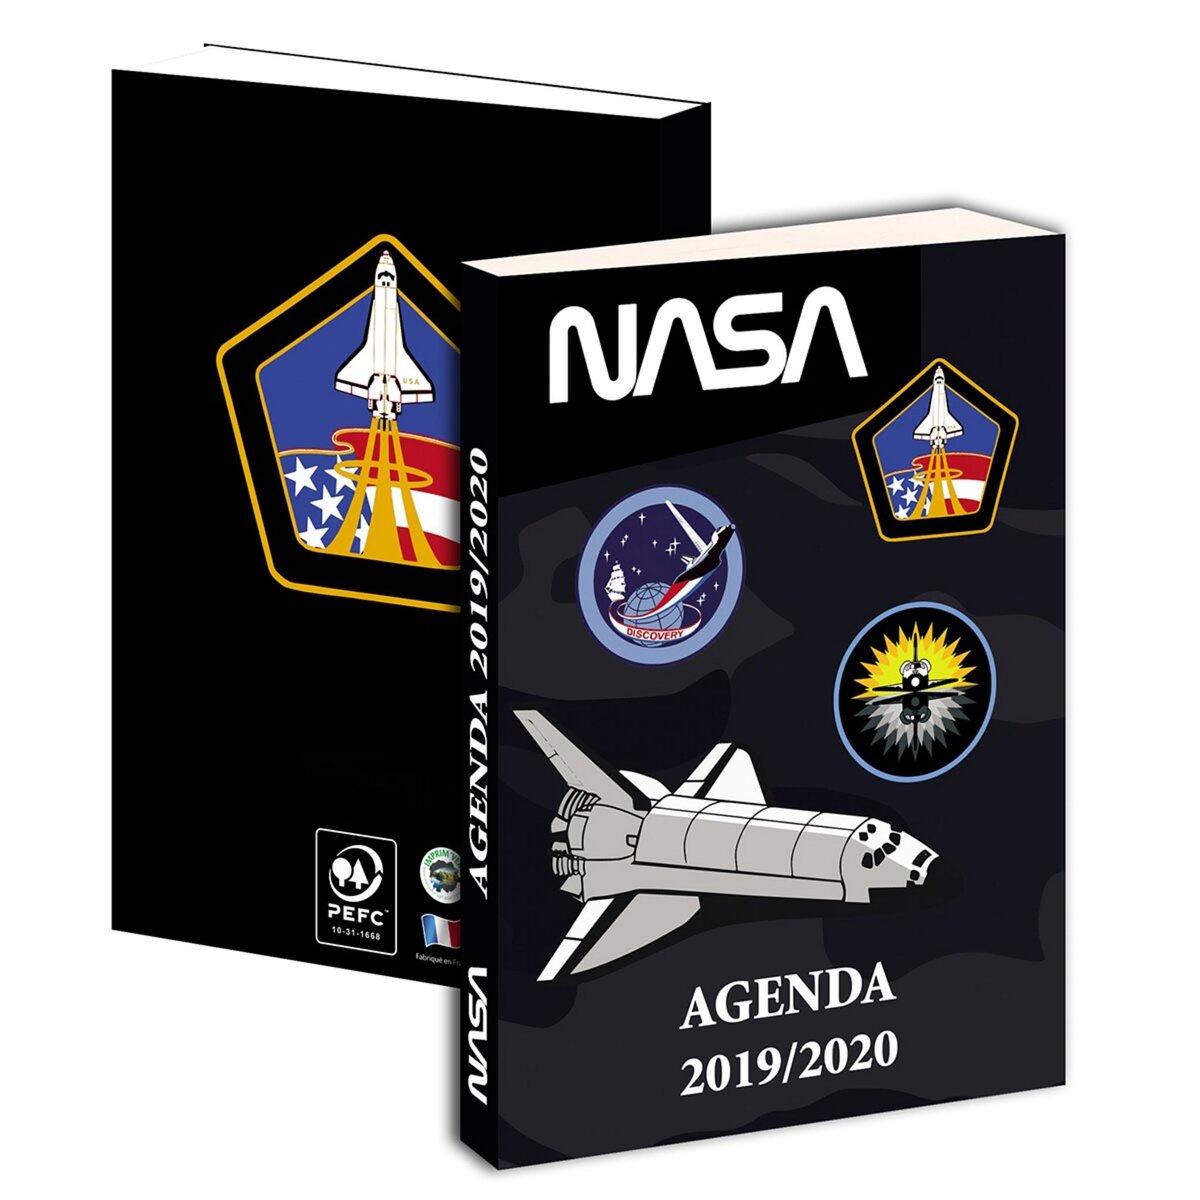 Agenda 12x17cm 1J/P couverture en carton souple NASA